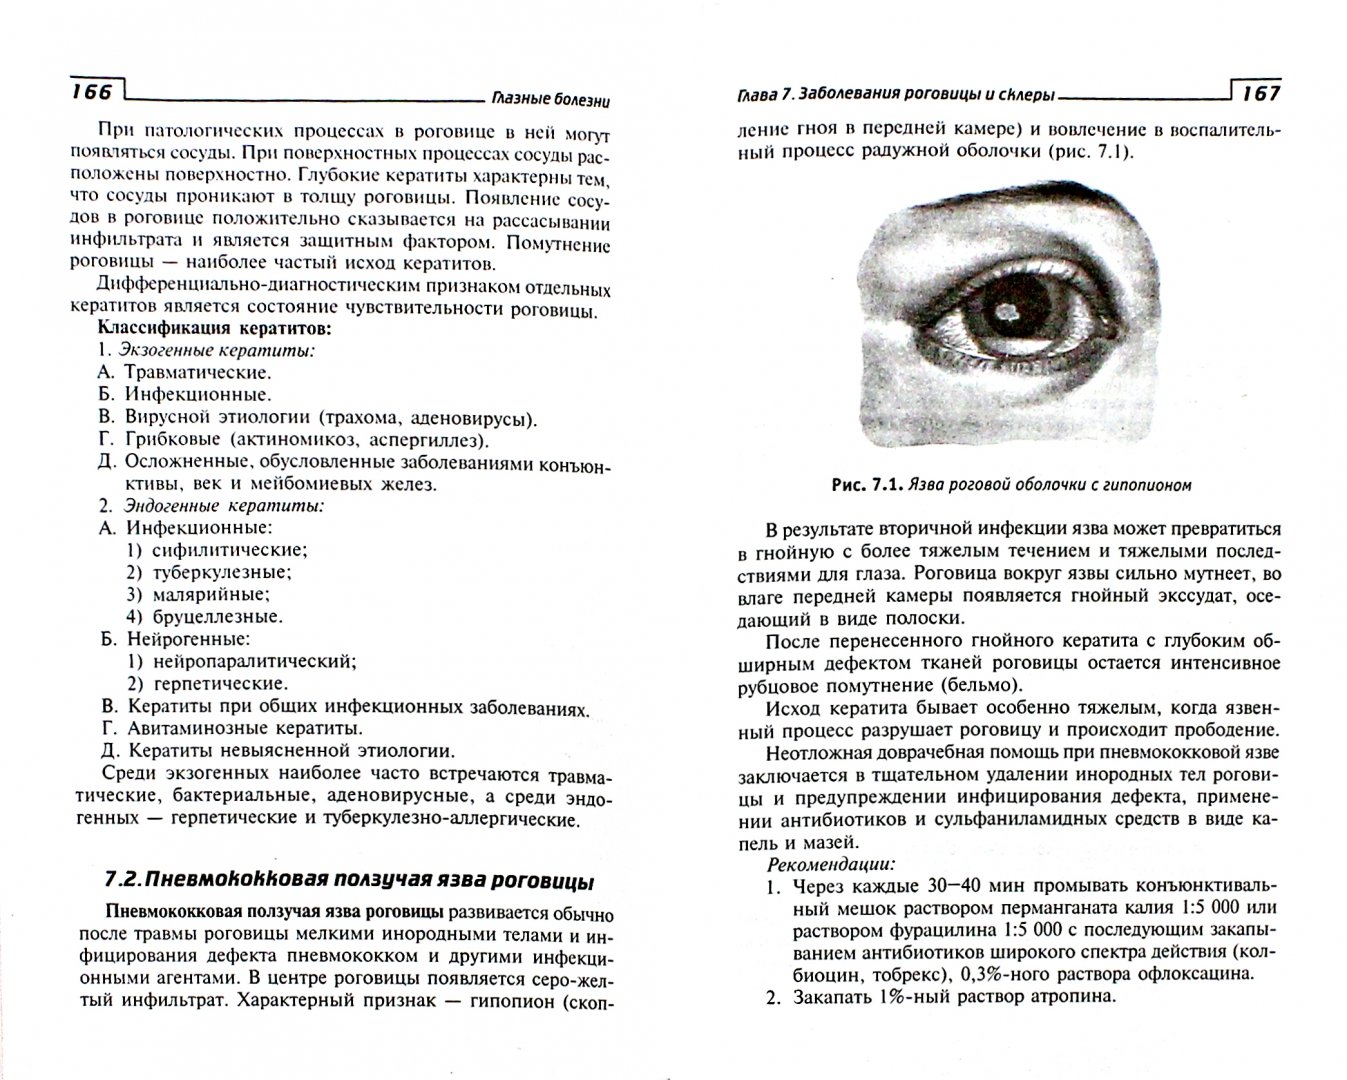 Иллюстрация 1 из 6 для Глазные болезни. Учебник - Элеонора Рубан | Лабиринт - книги. Источник: Лабиринт